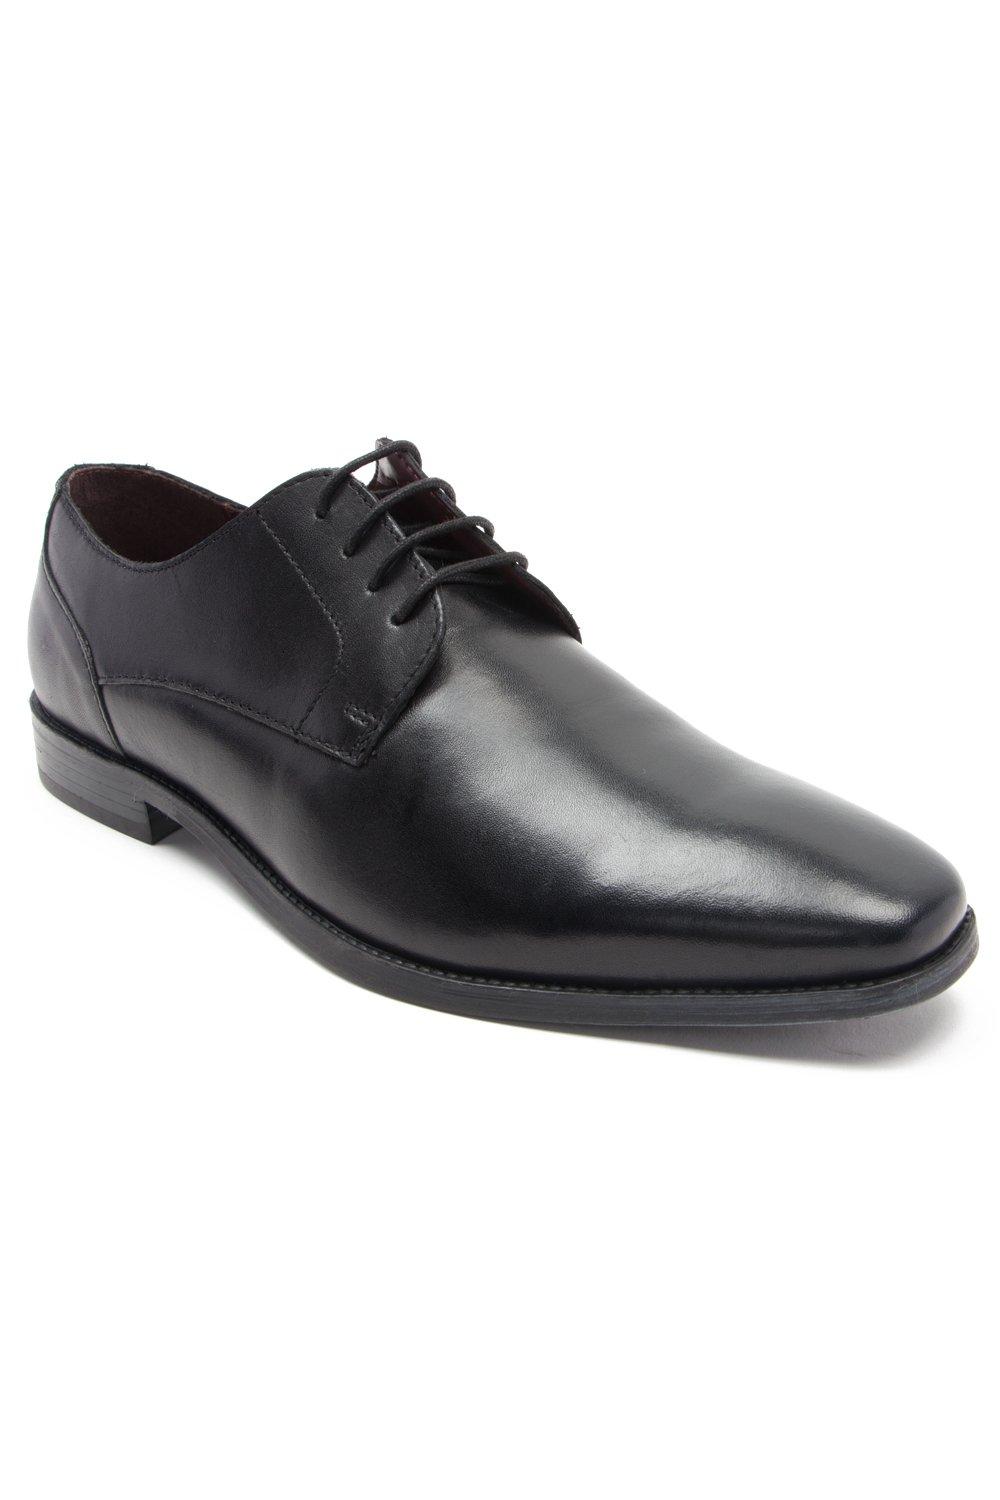 Формальные кожаные туфли дерби на шнуровке 'Falcon' Thomas Crick, черный мужские кожаные деловые туфли на шнуровке для офиса черный